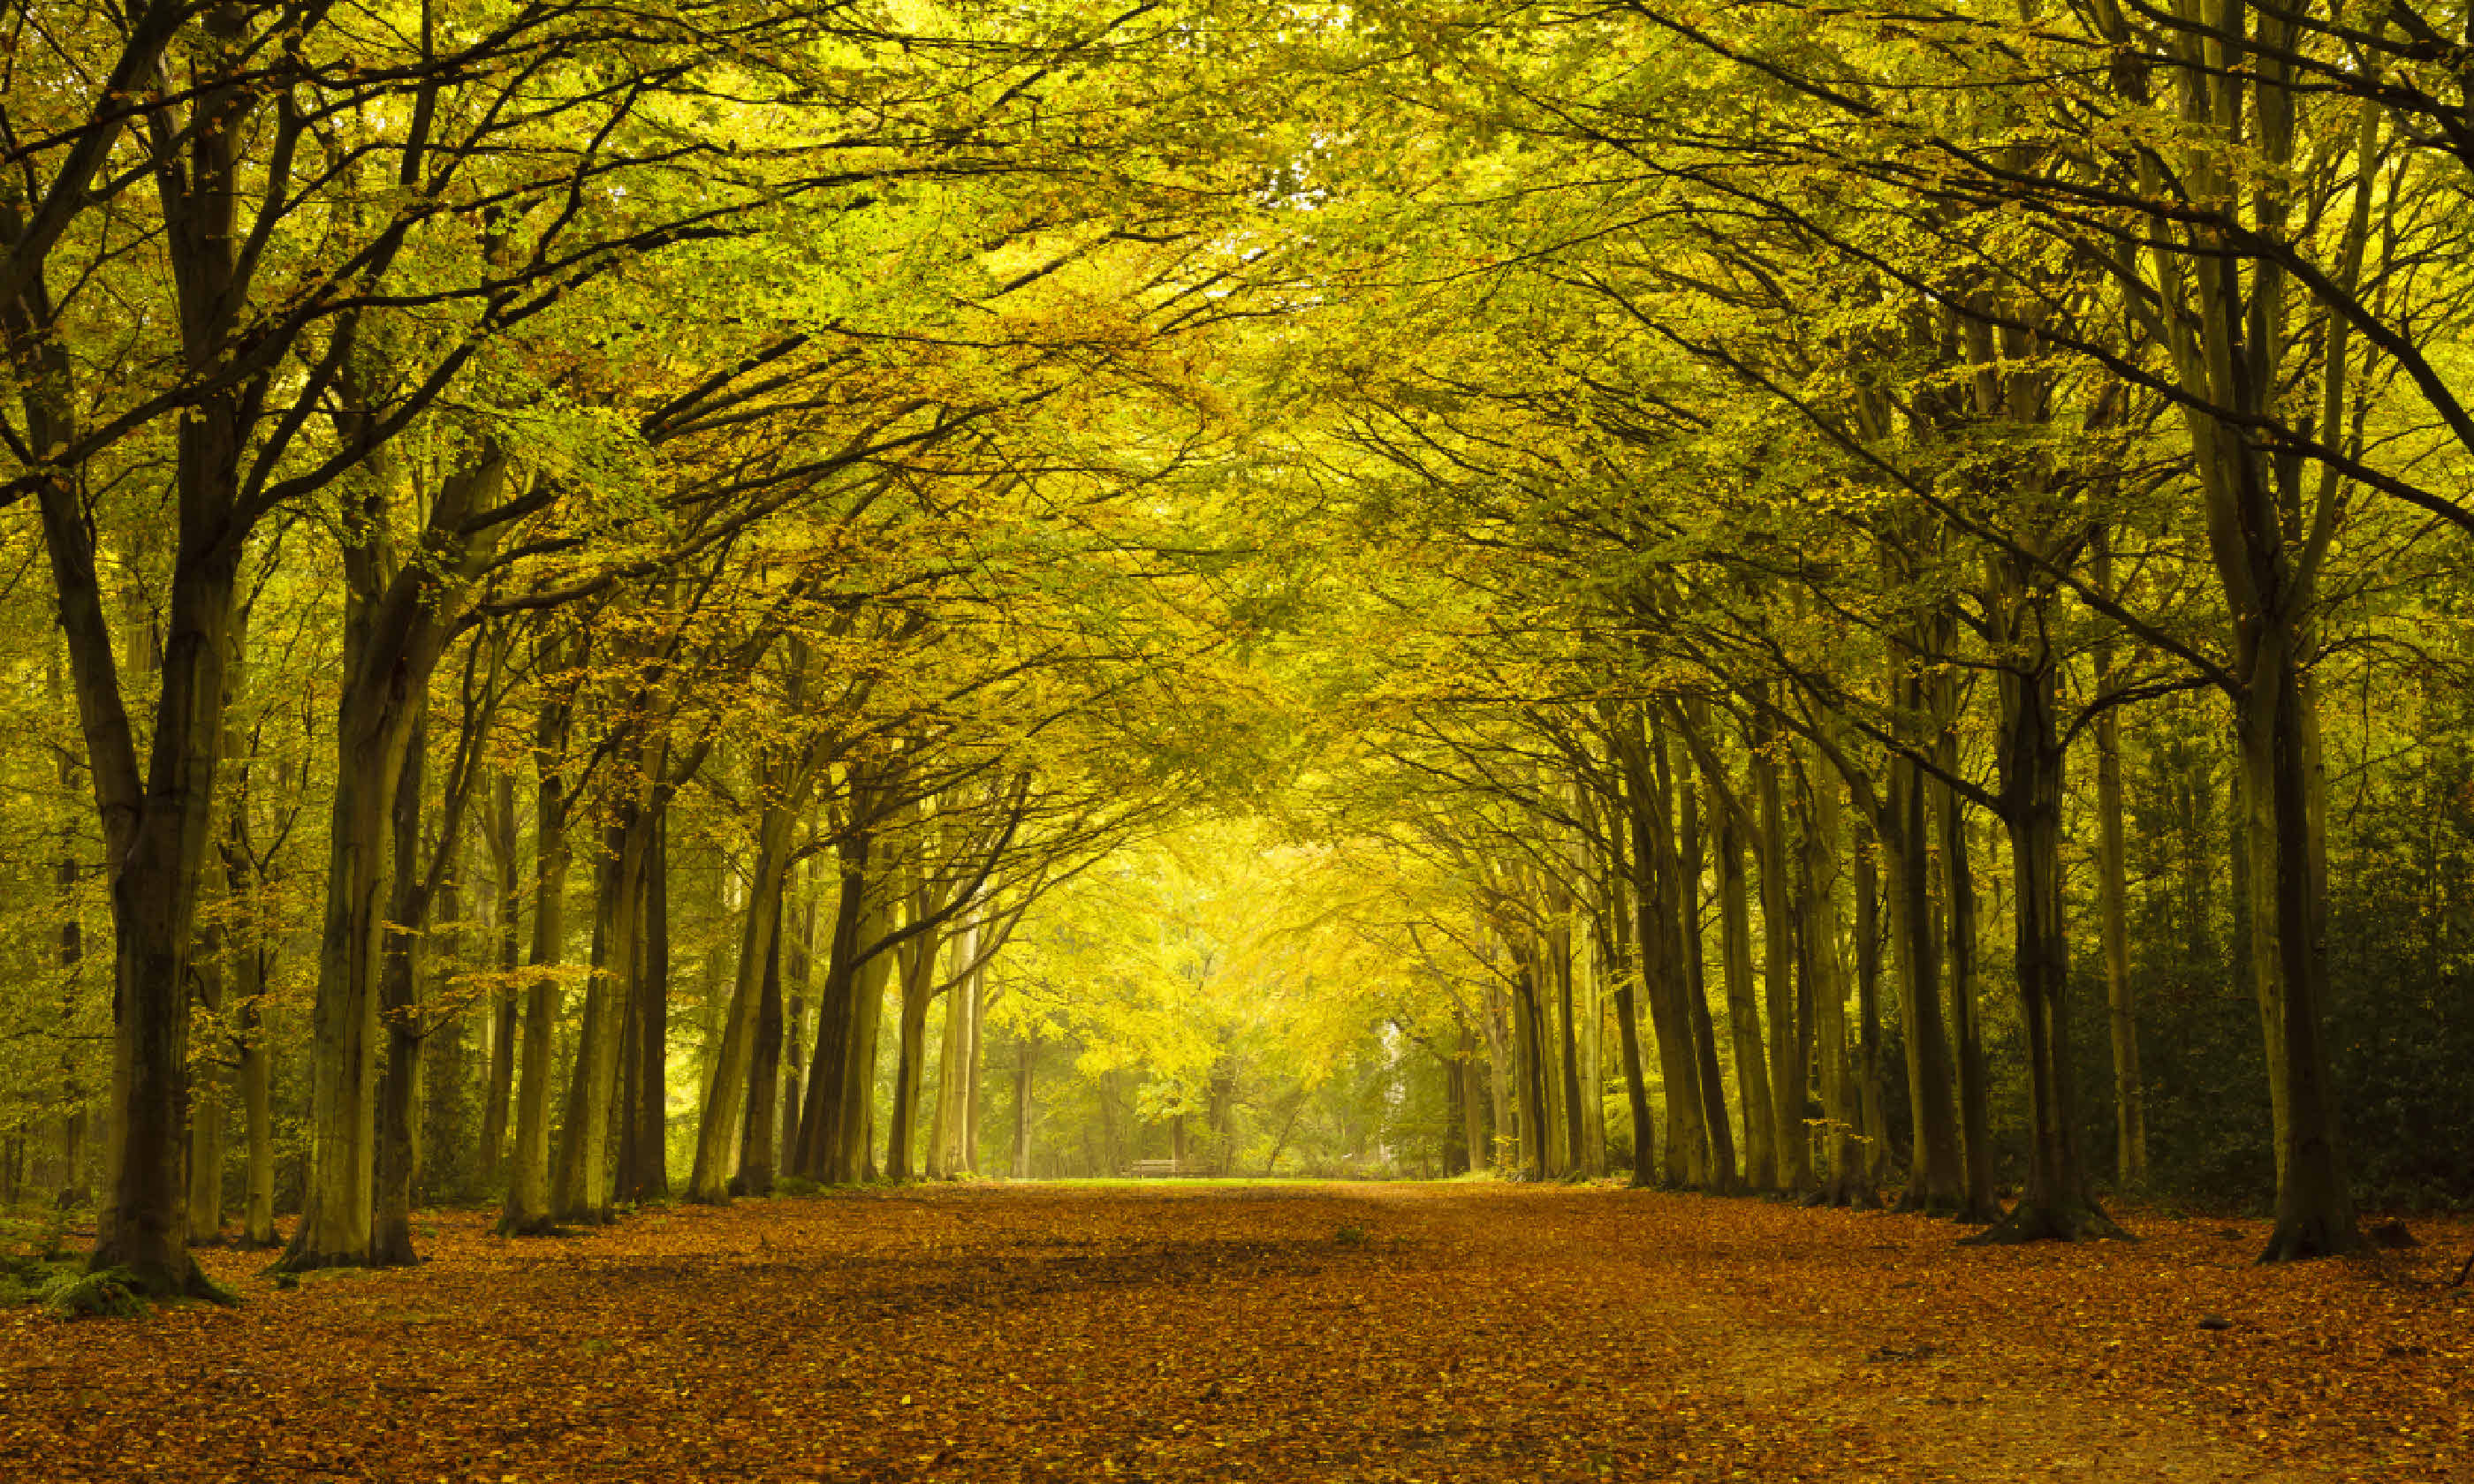 Autumn forest in Norfolk (Shutterstock)